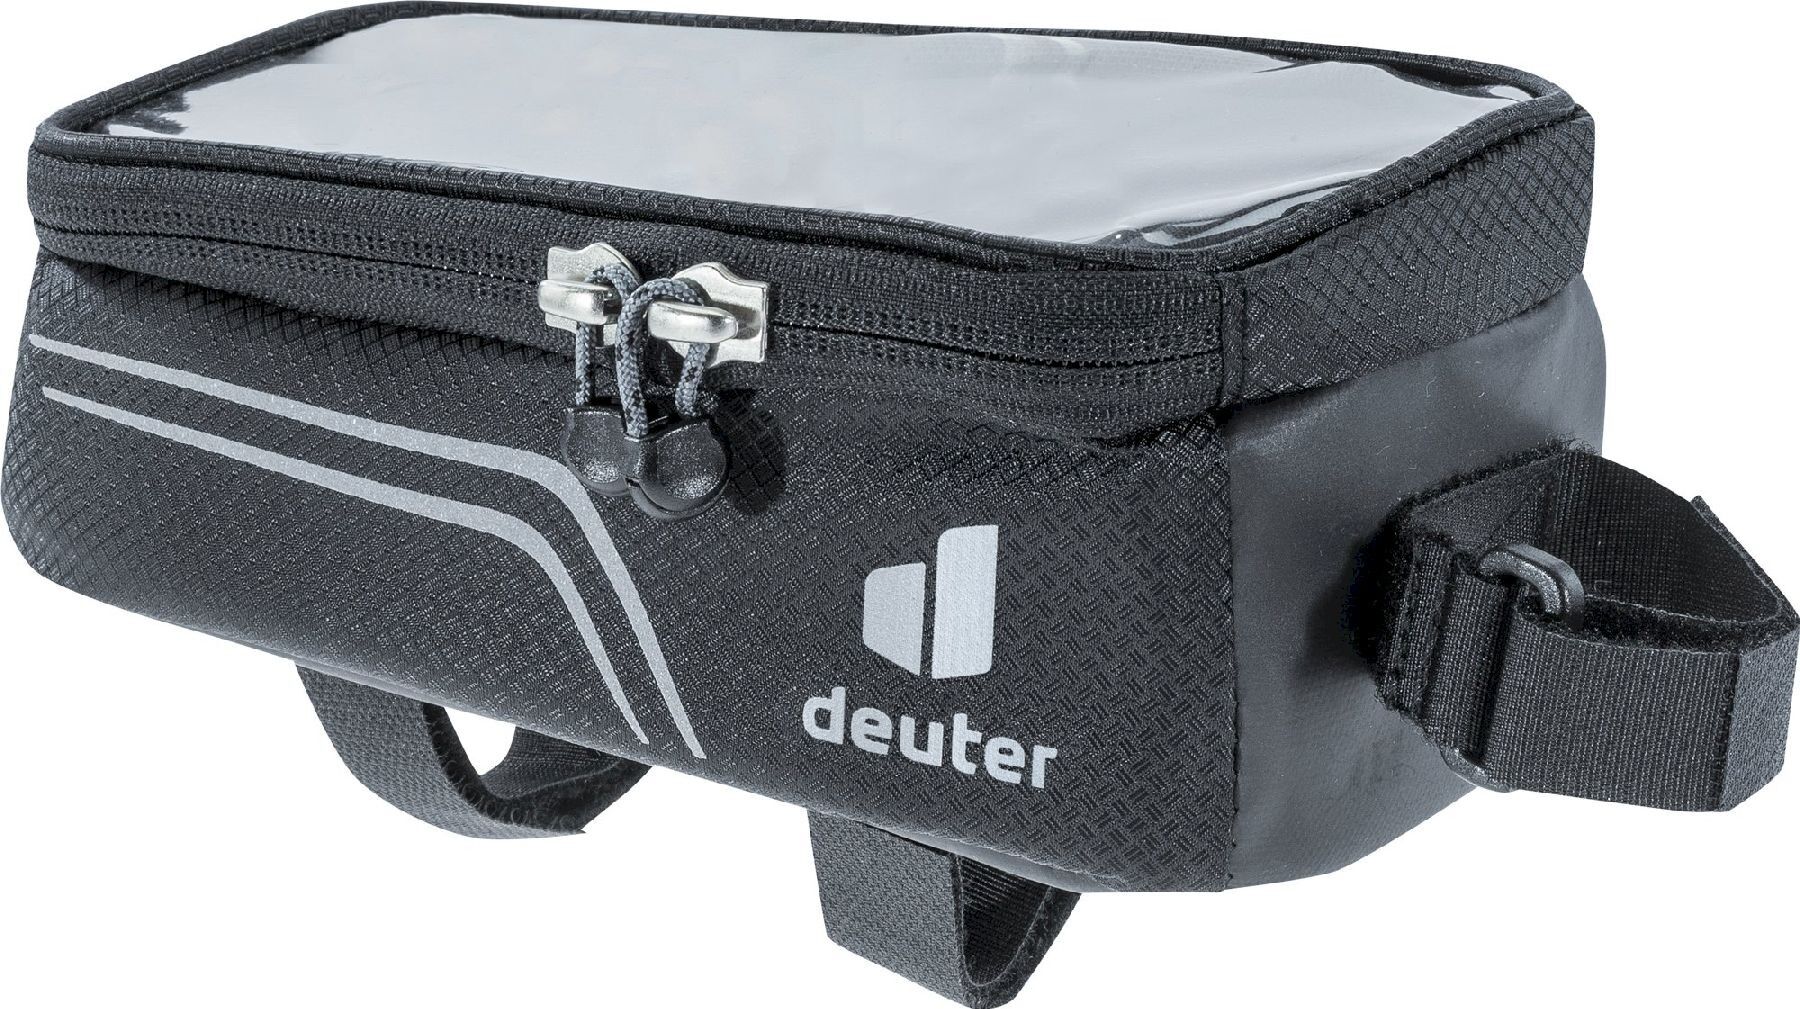 Deuter Energy Bag II - Frametas fiets